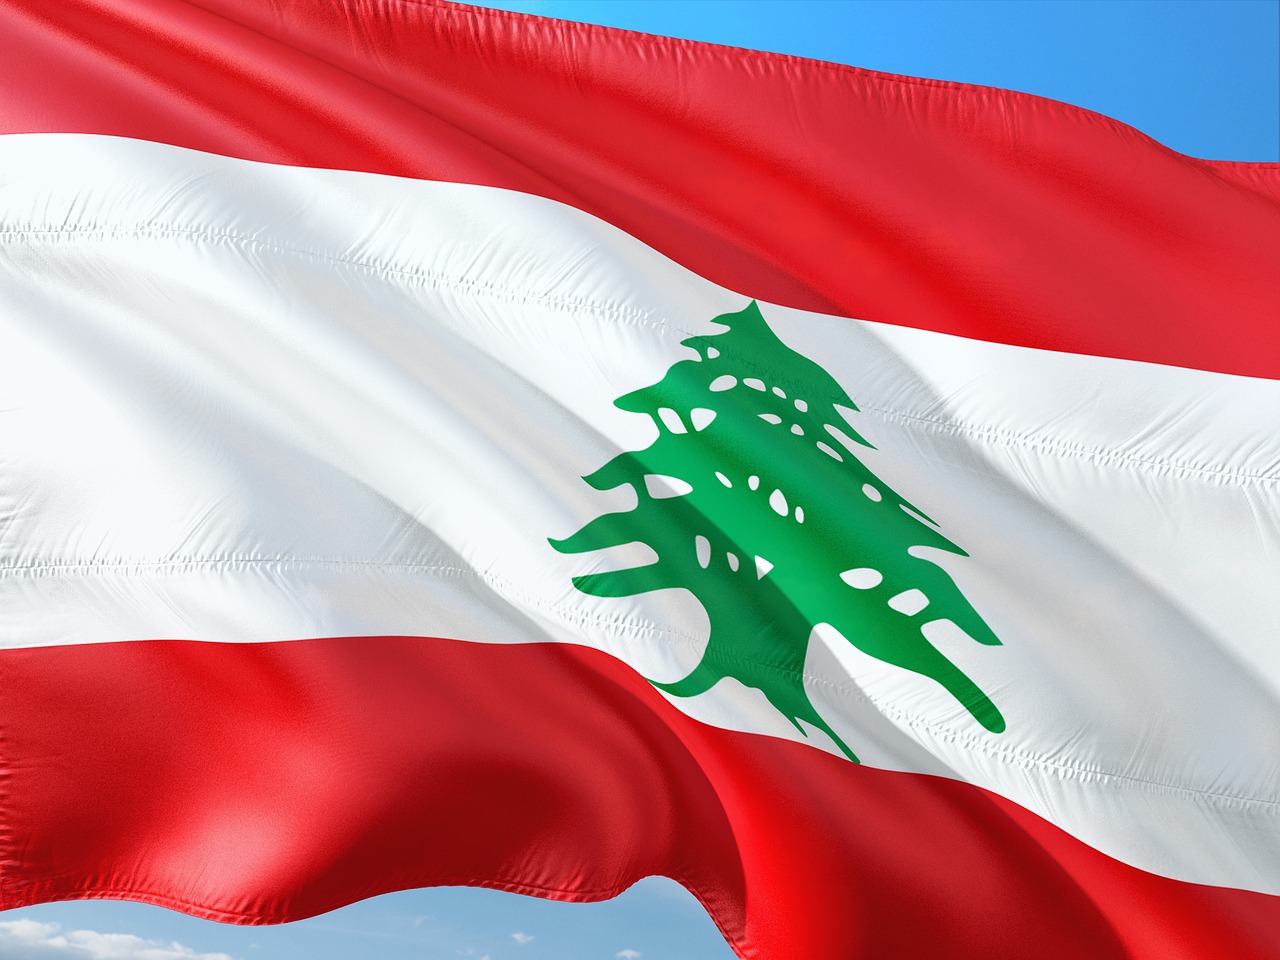 Swiss regulator investigates 12 banks in Lebanese central banker corruption case